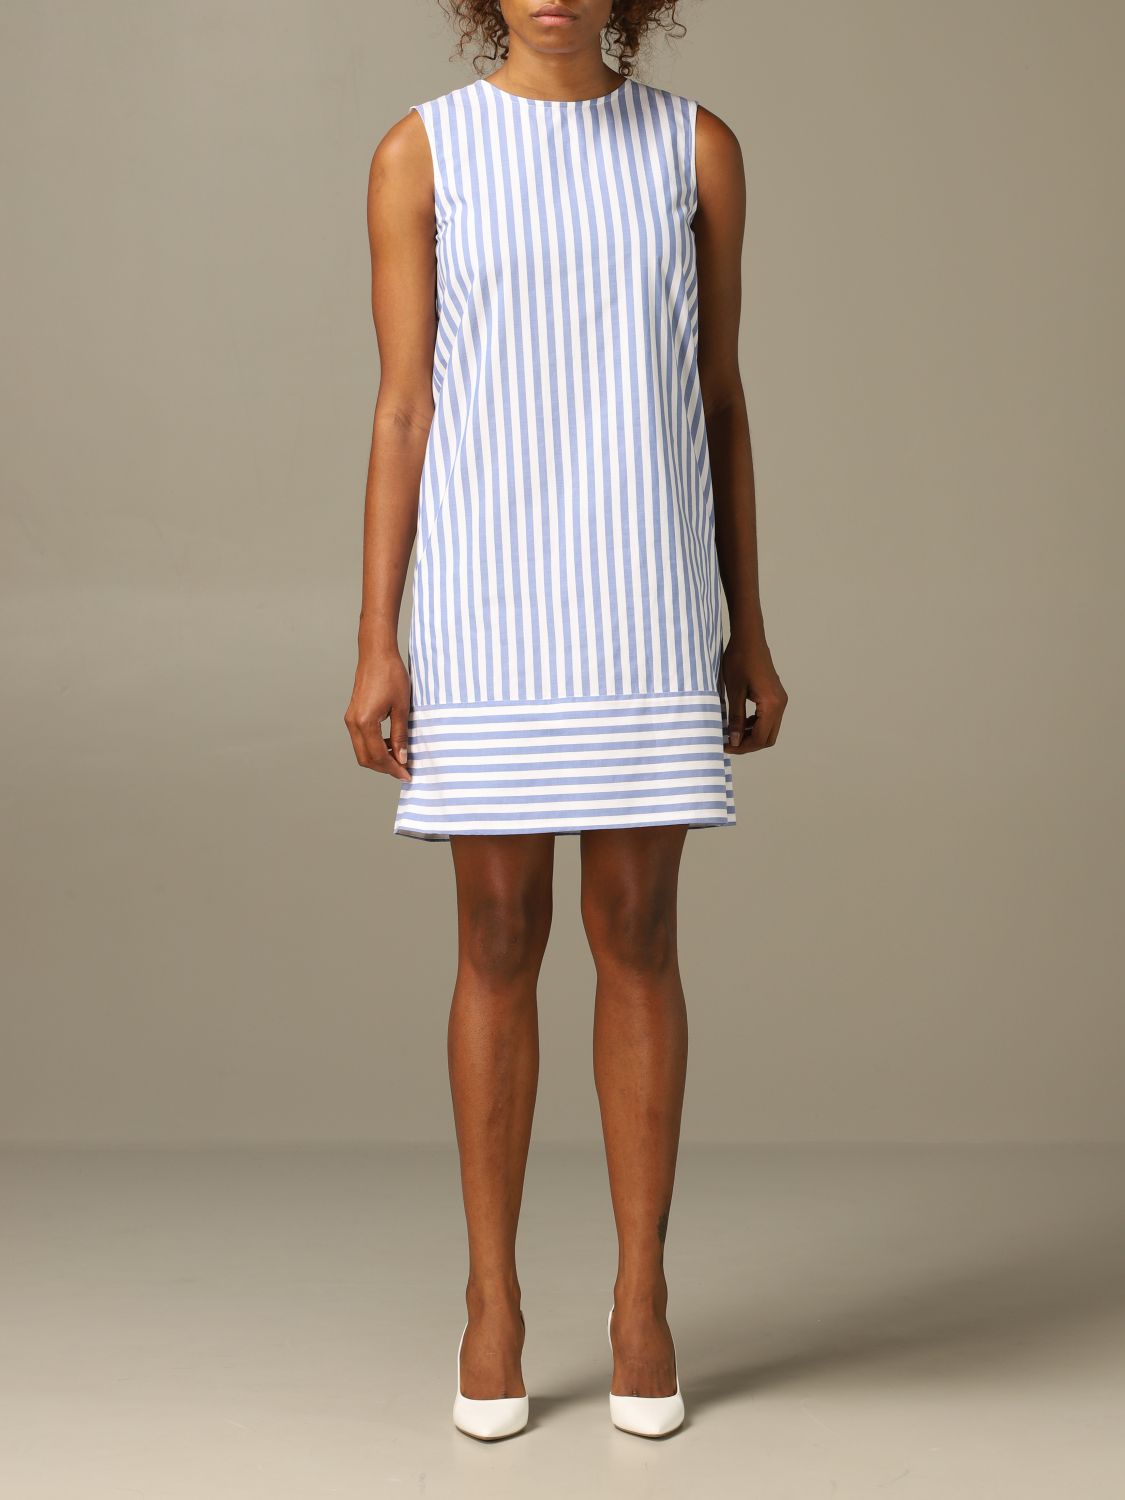 S MAX MARA: striped dress | Dress S Max Mara Women Striped | Dress S